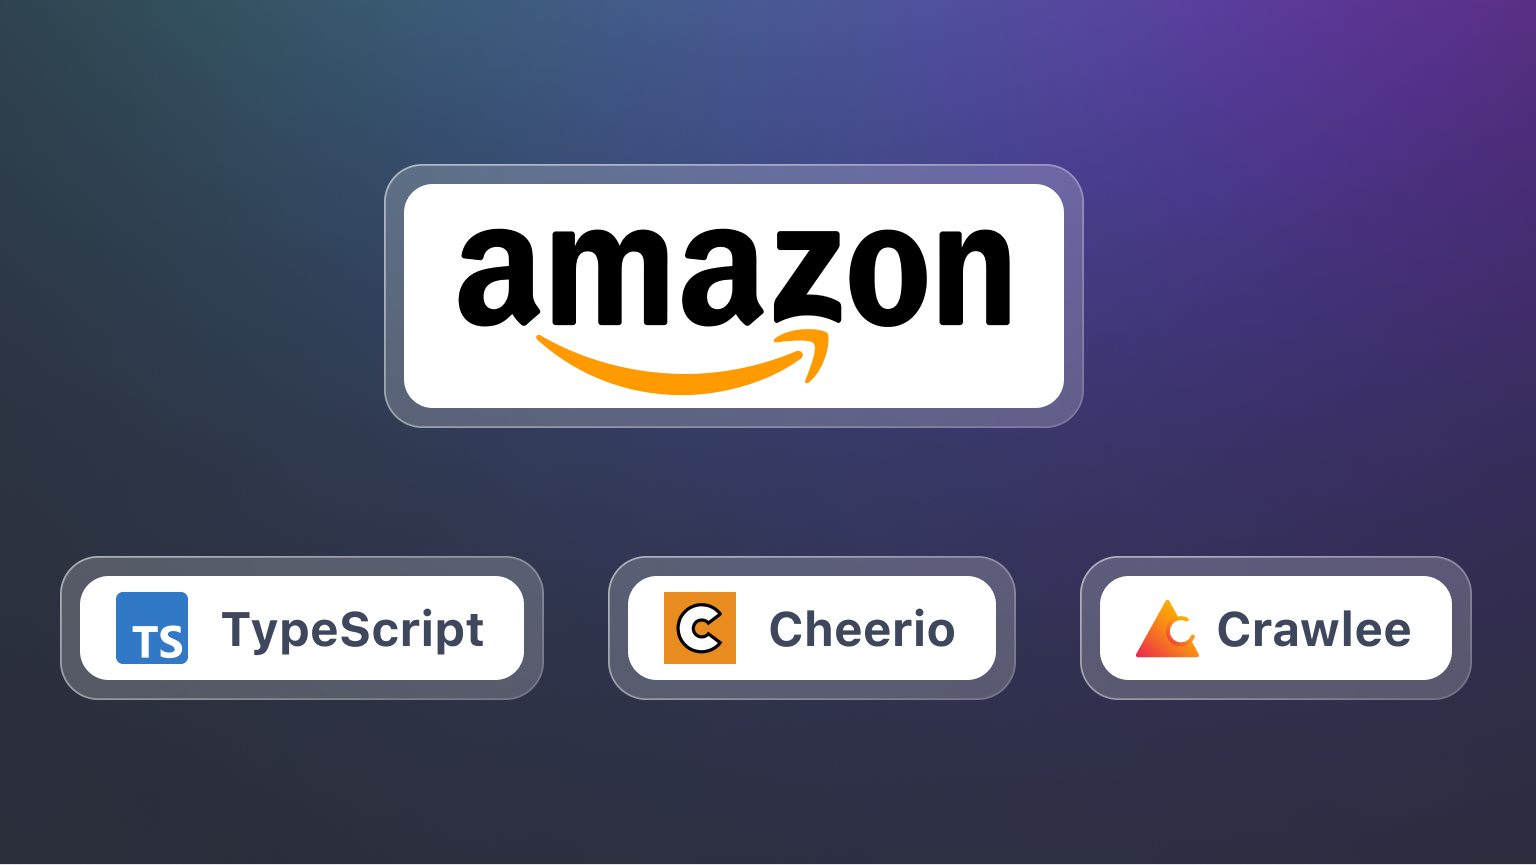 How to scrape Amazon using Typescript, Cheerio, and Crawlee